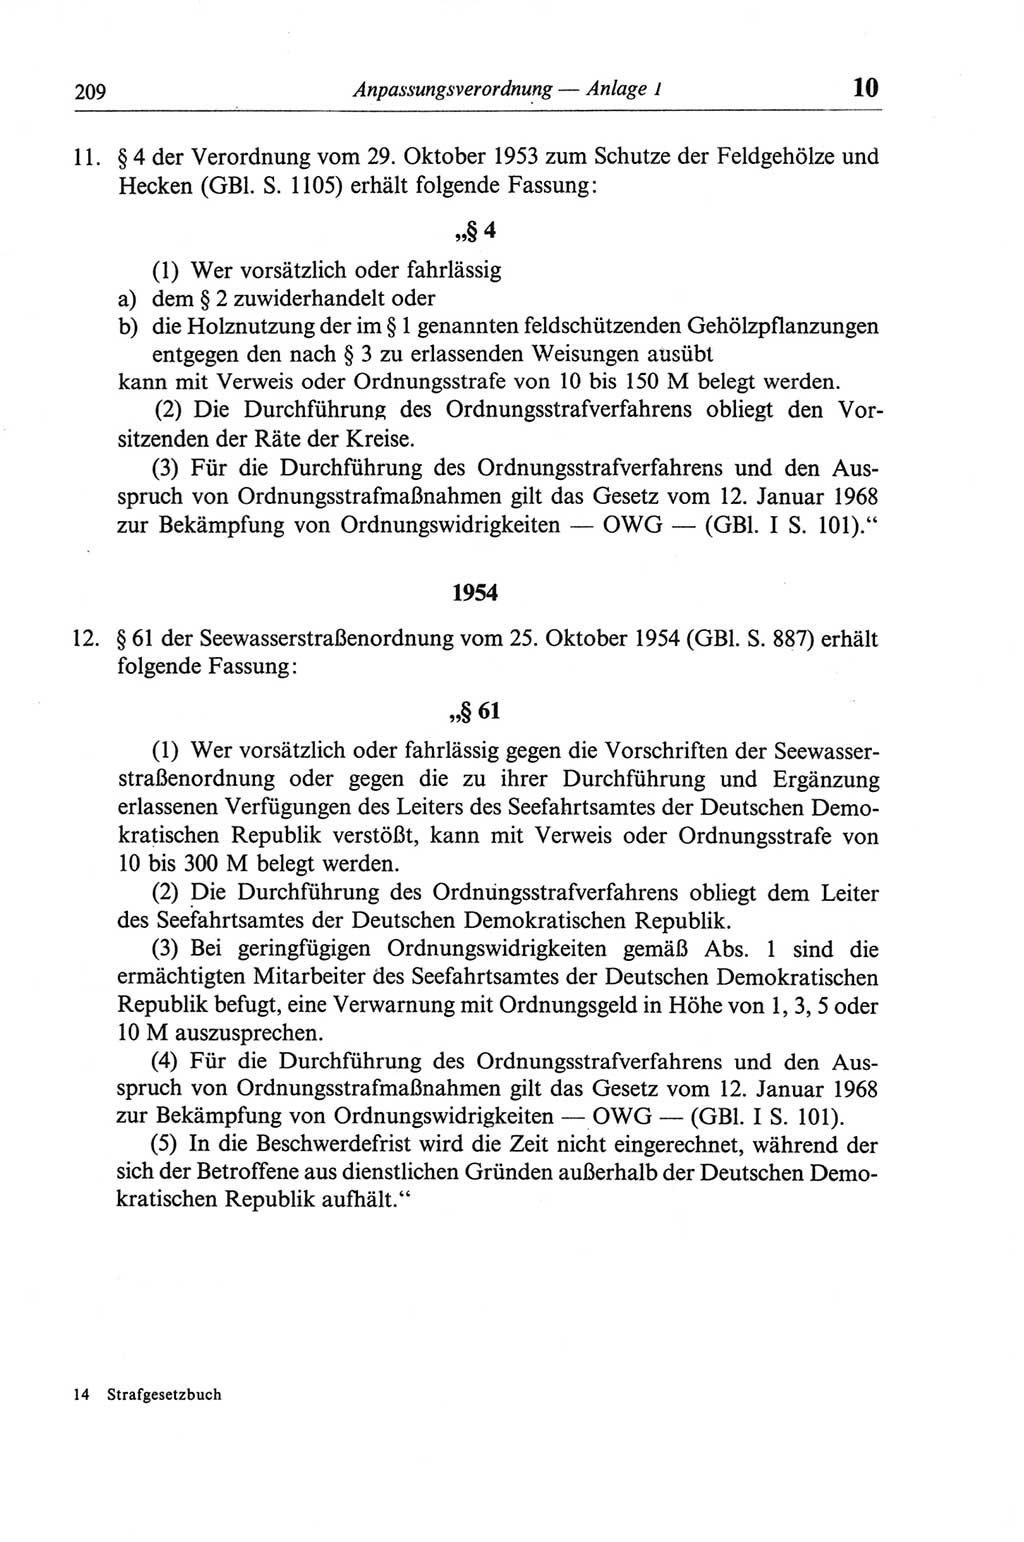 Strafgesetzbuch (StGB) der Deutschen Demokratischen Republik (DDR) und angrenzende Gesetze und Bestimmungen 1968, Seite 209 (StGB Ges. Best. DDR 1968, S. 209)